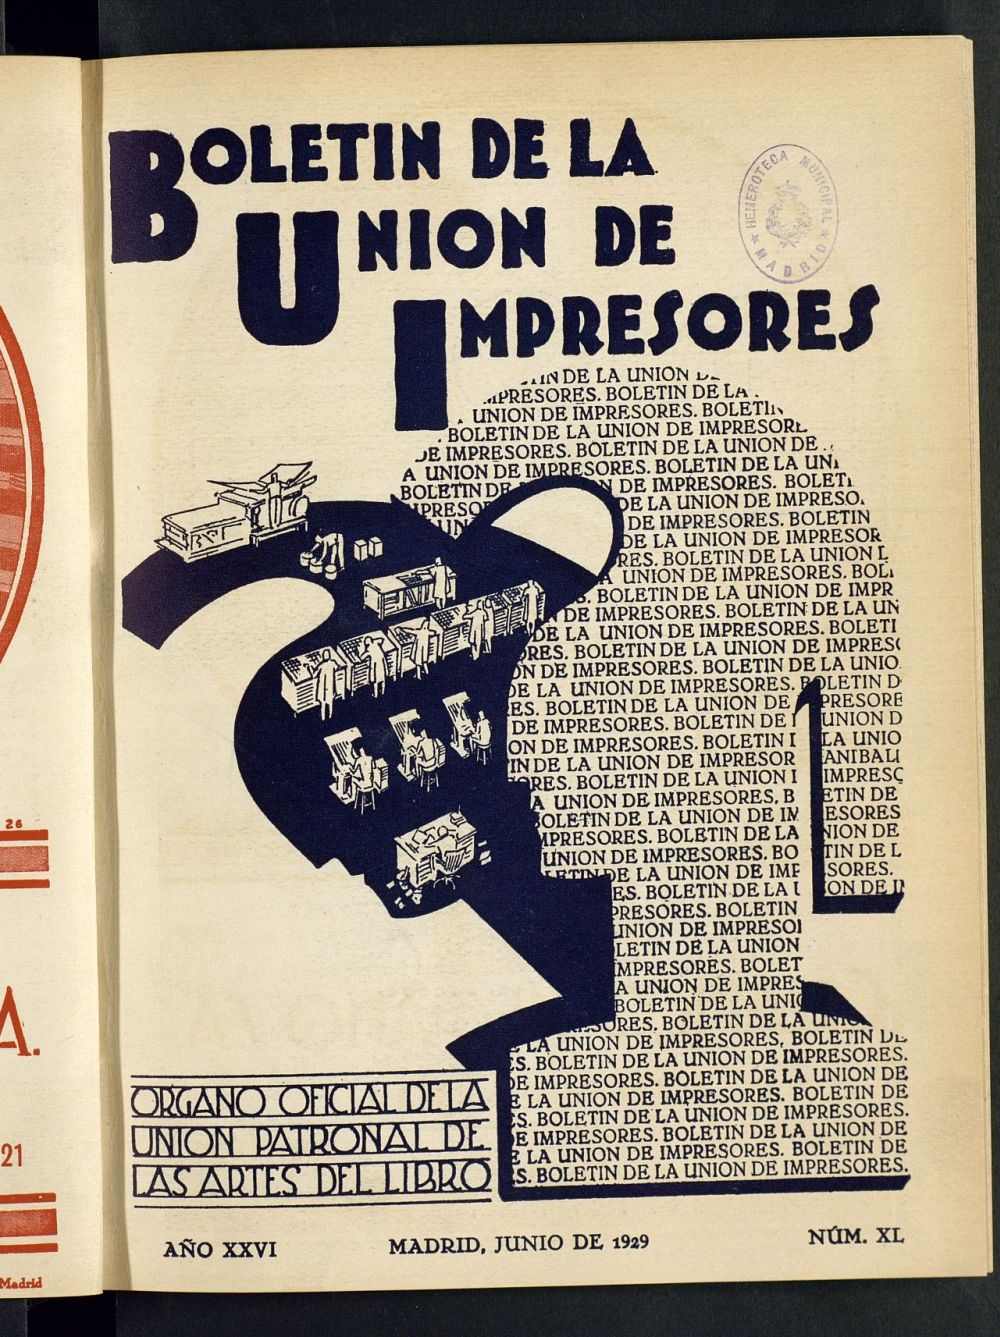 Boletn de la unin de impresores : rgano de la unin patronal de las artes del libro de junio de 1929